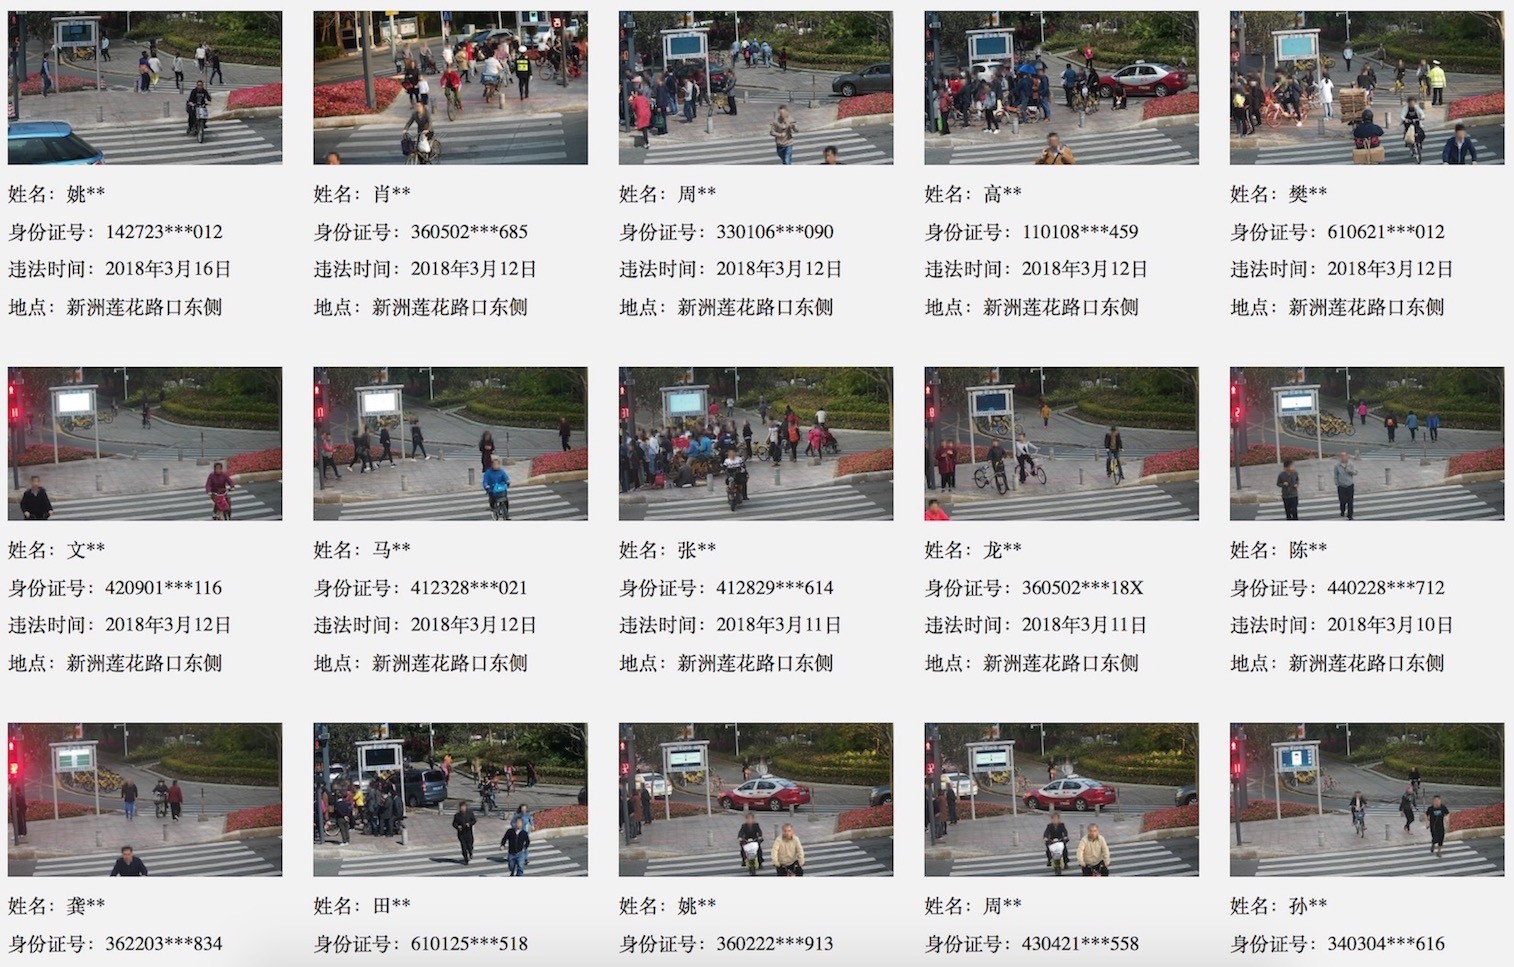 jaywalking-photos-online-shenzhen.jpg